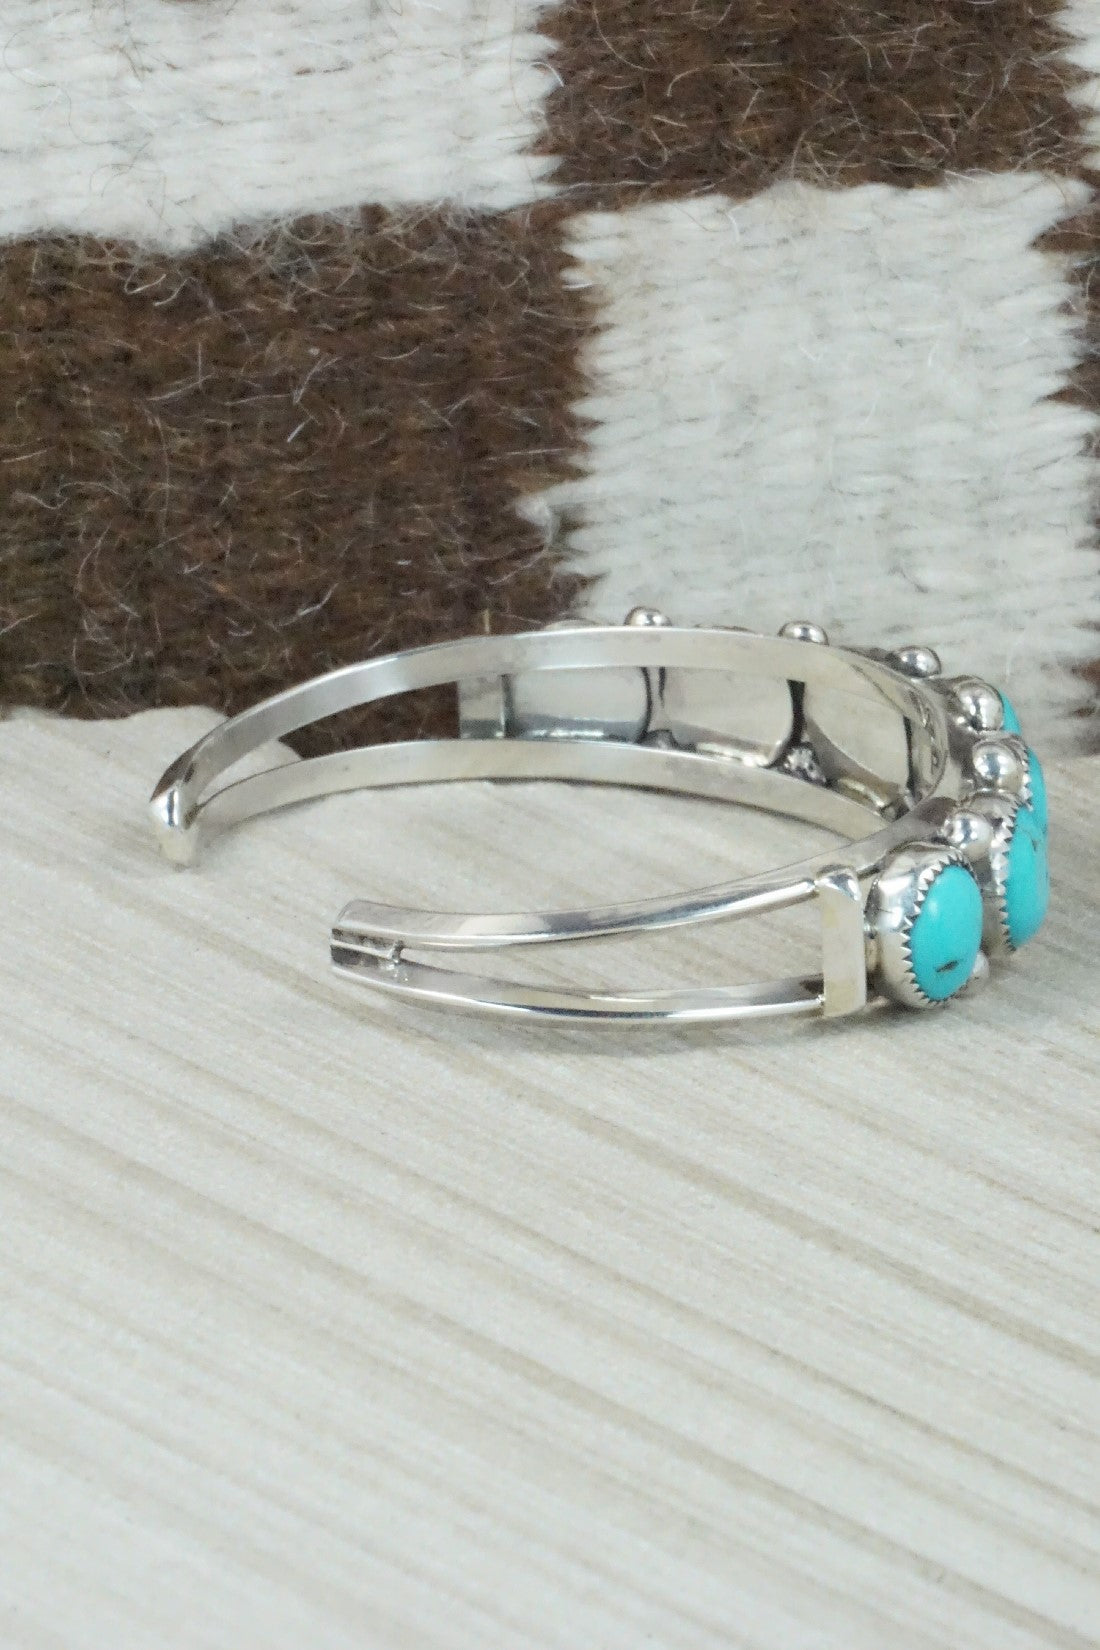 Turquoise & Sterling Silver Bracelet - Priscilla Reeder